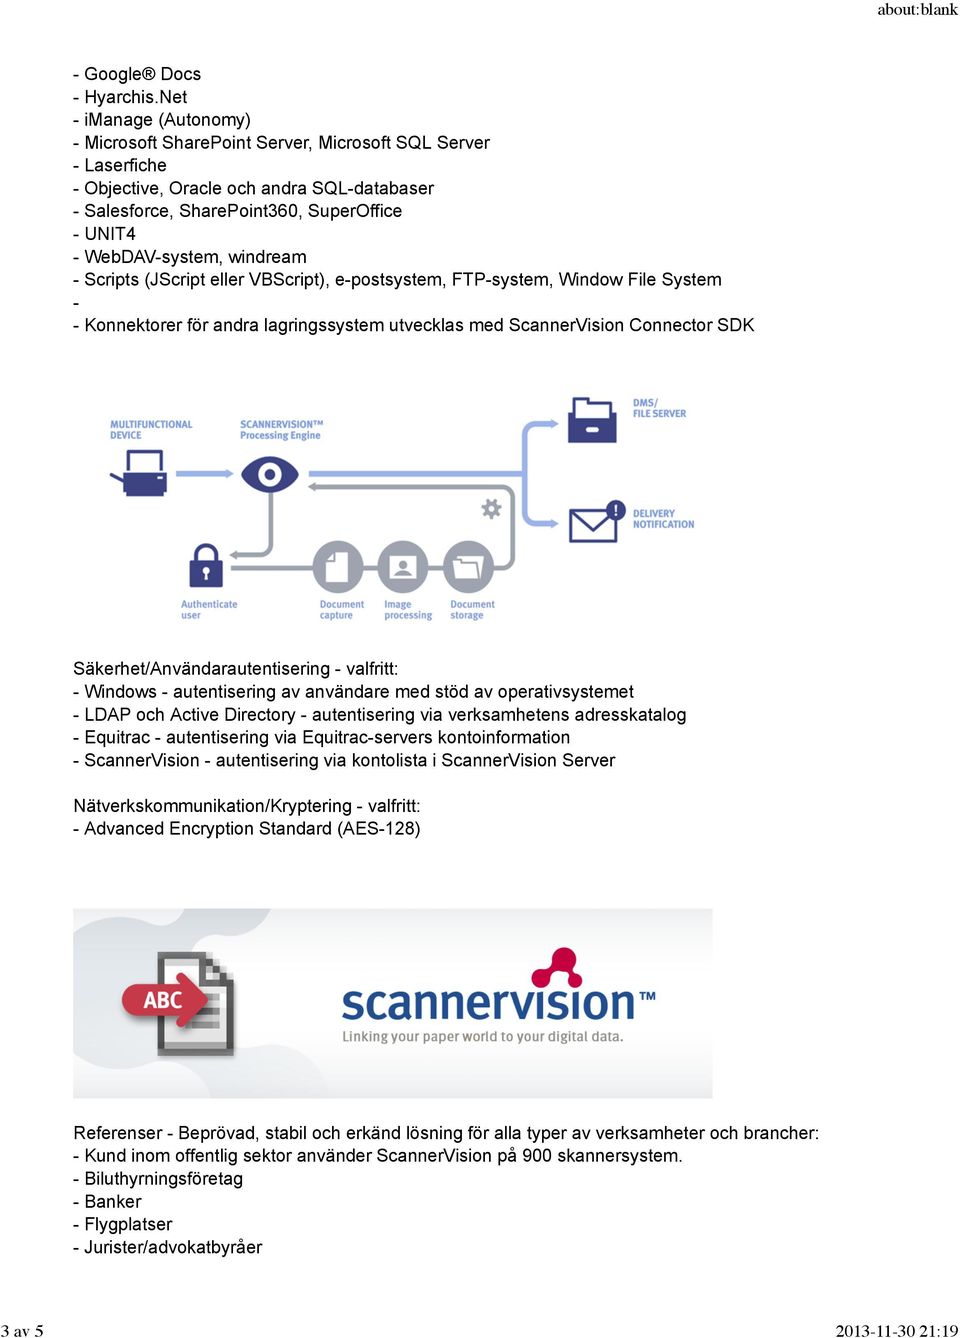 windream - Scripts (JScript eller VBScript), e-postsystem, FTP-system, Window File System - - Konnektorer för andra lagringssystem utvecklas med ScannerVision Connector SDK